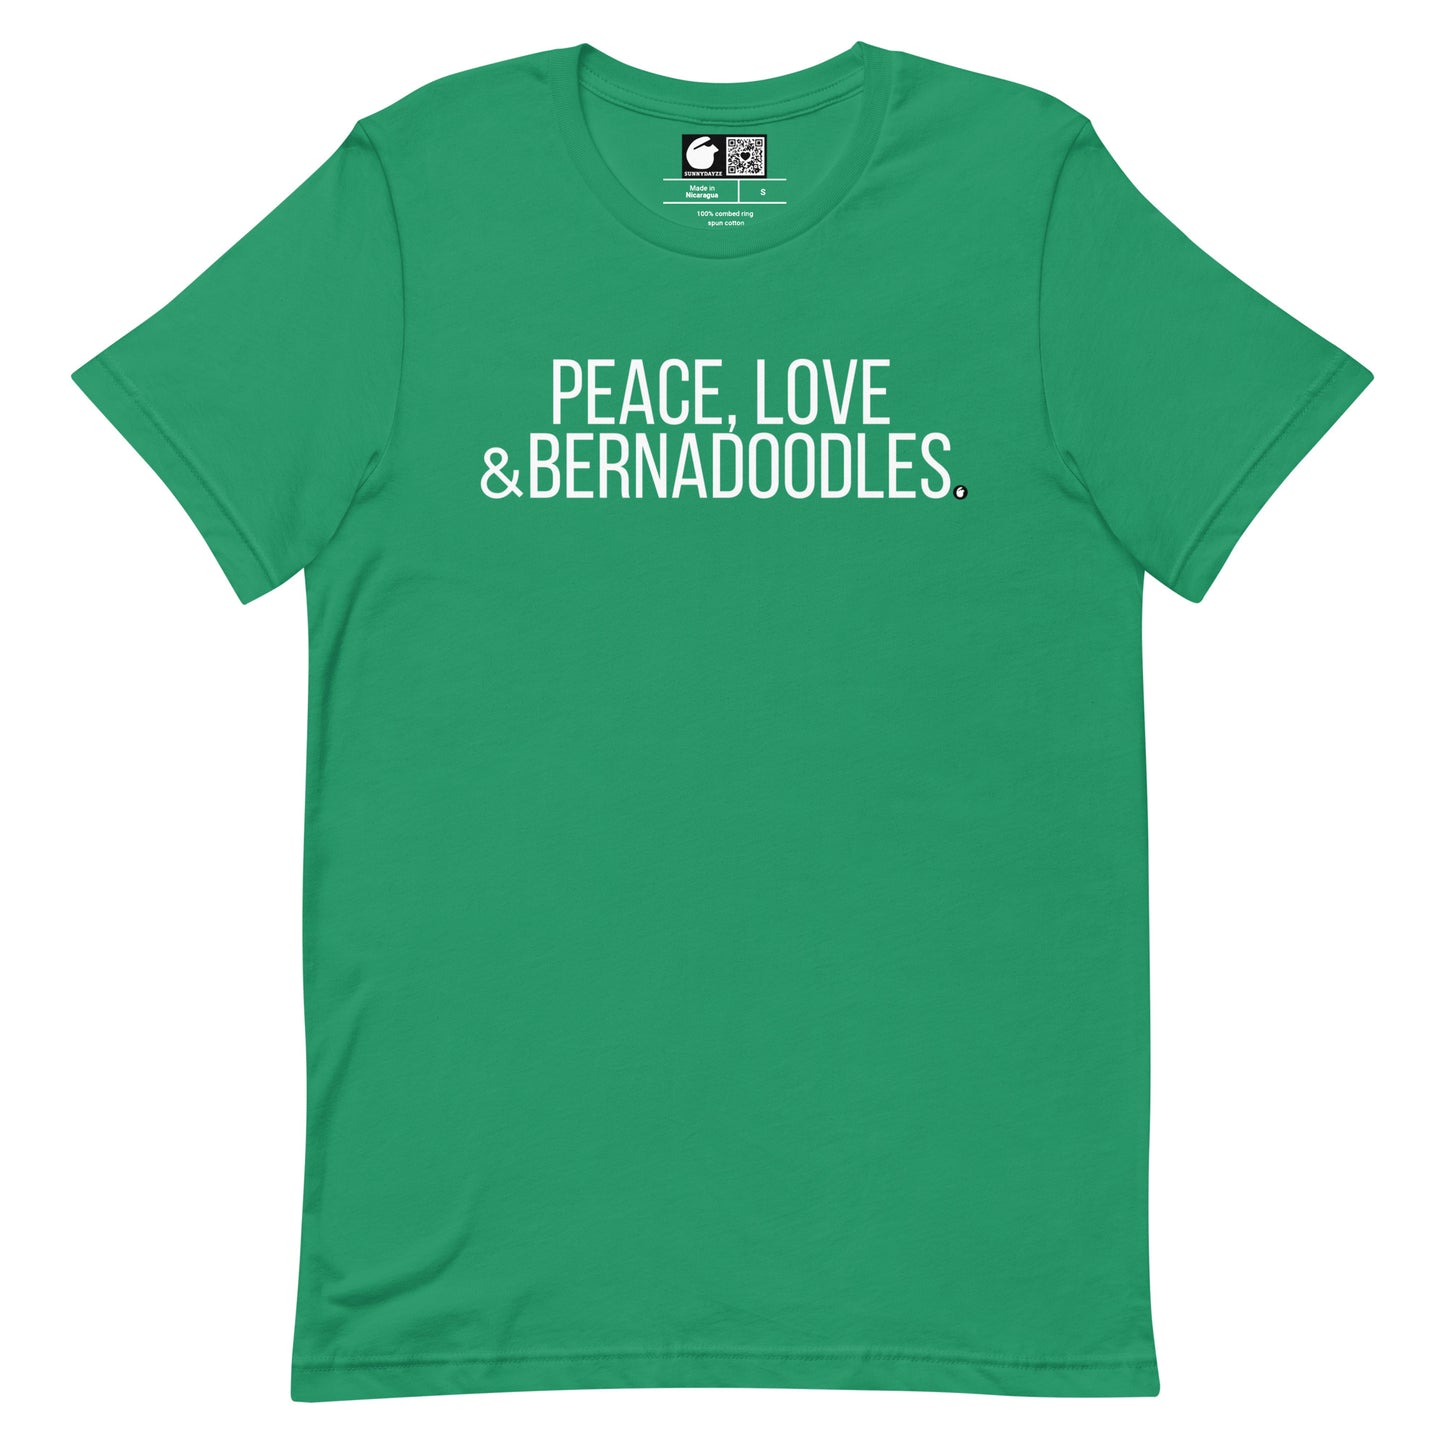 BERNADOODLES Short-Sleeve Unisex t-shirt